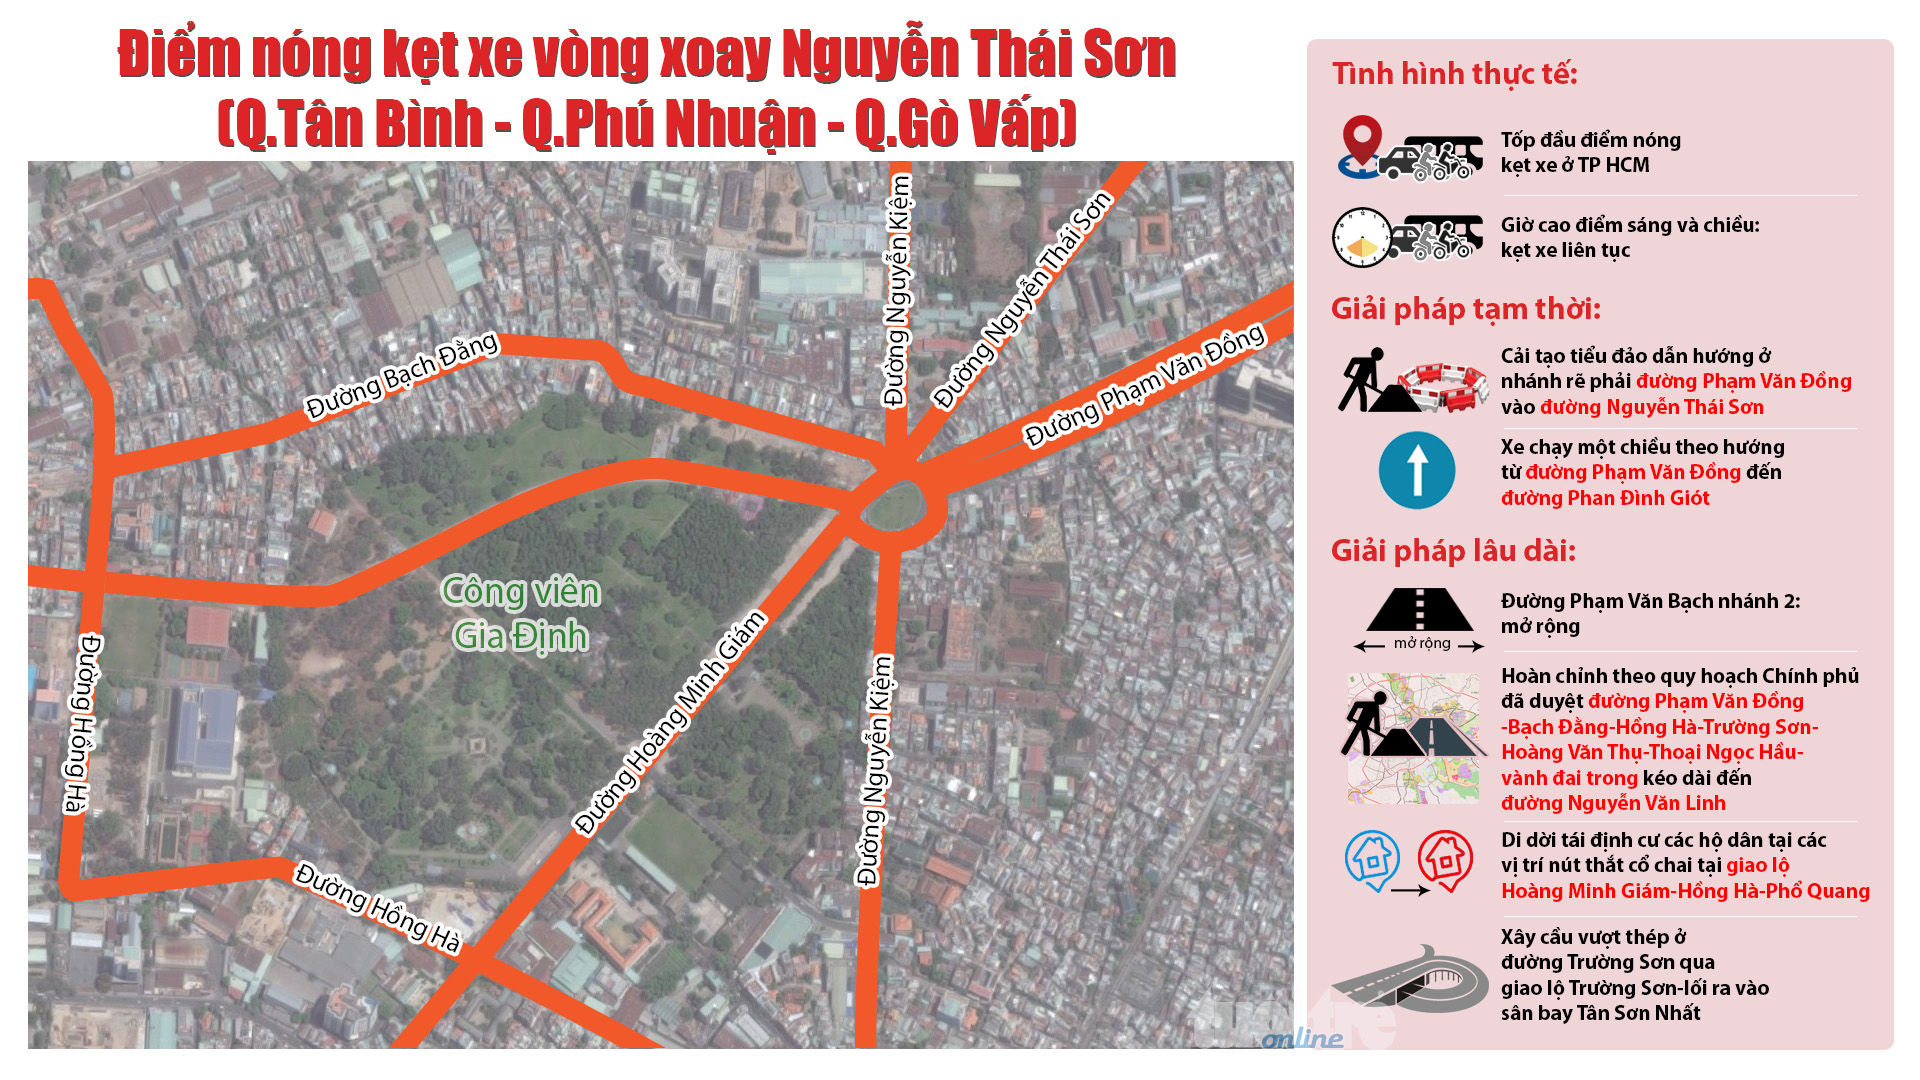 Điểm nóng kẹt xe vòng xoay Nguyễn Thái Sơn (quận Gò Vấp): thực trạng và giải pháp đề xuất - Đồ họa: Việt Thái